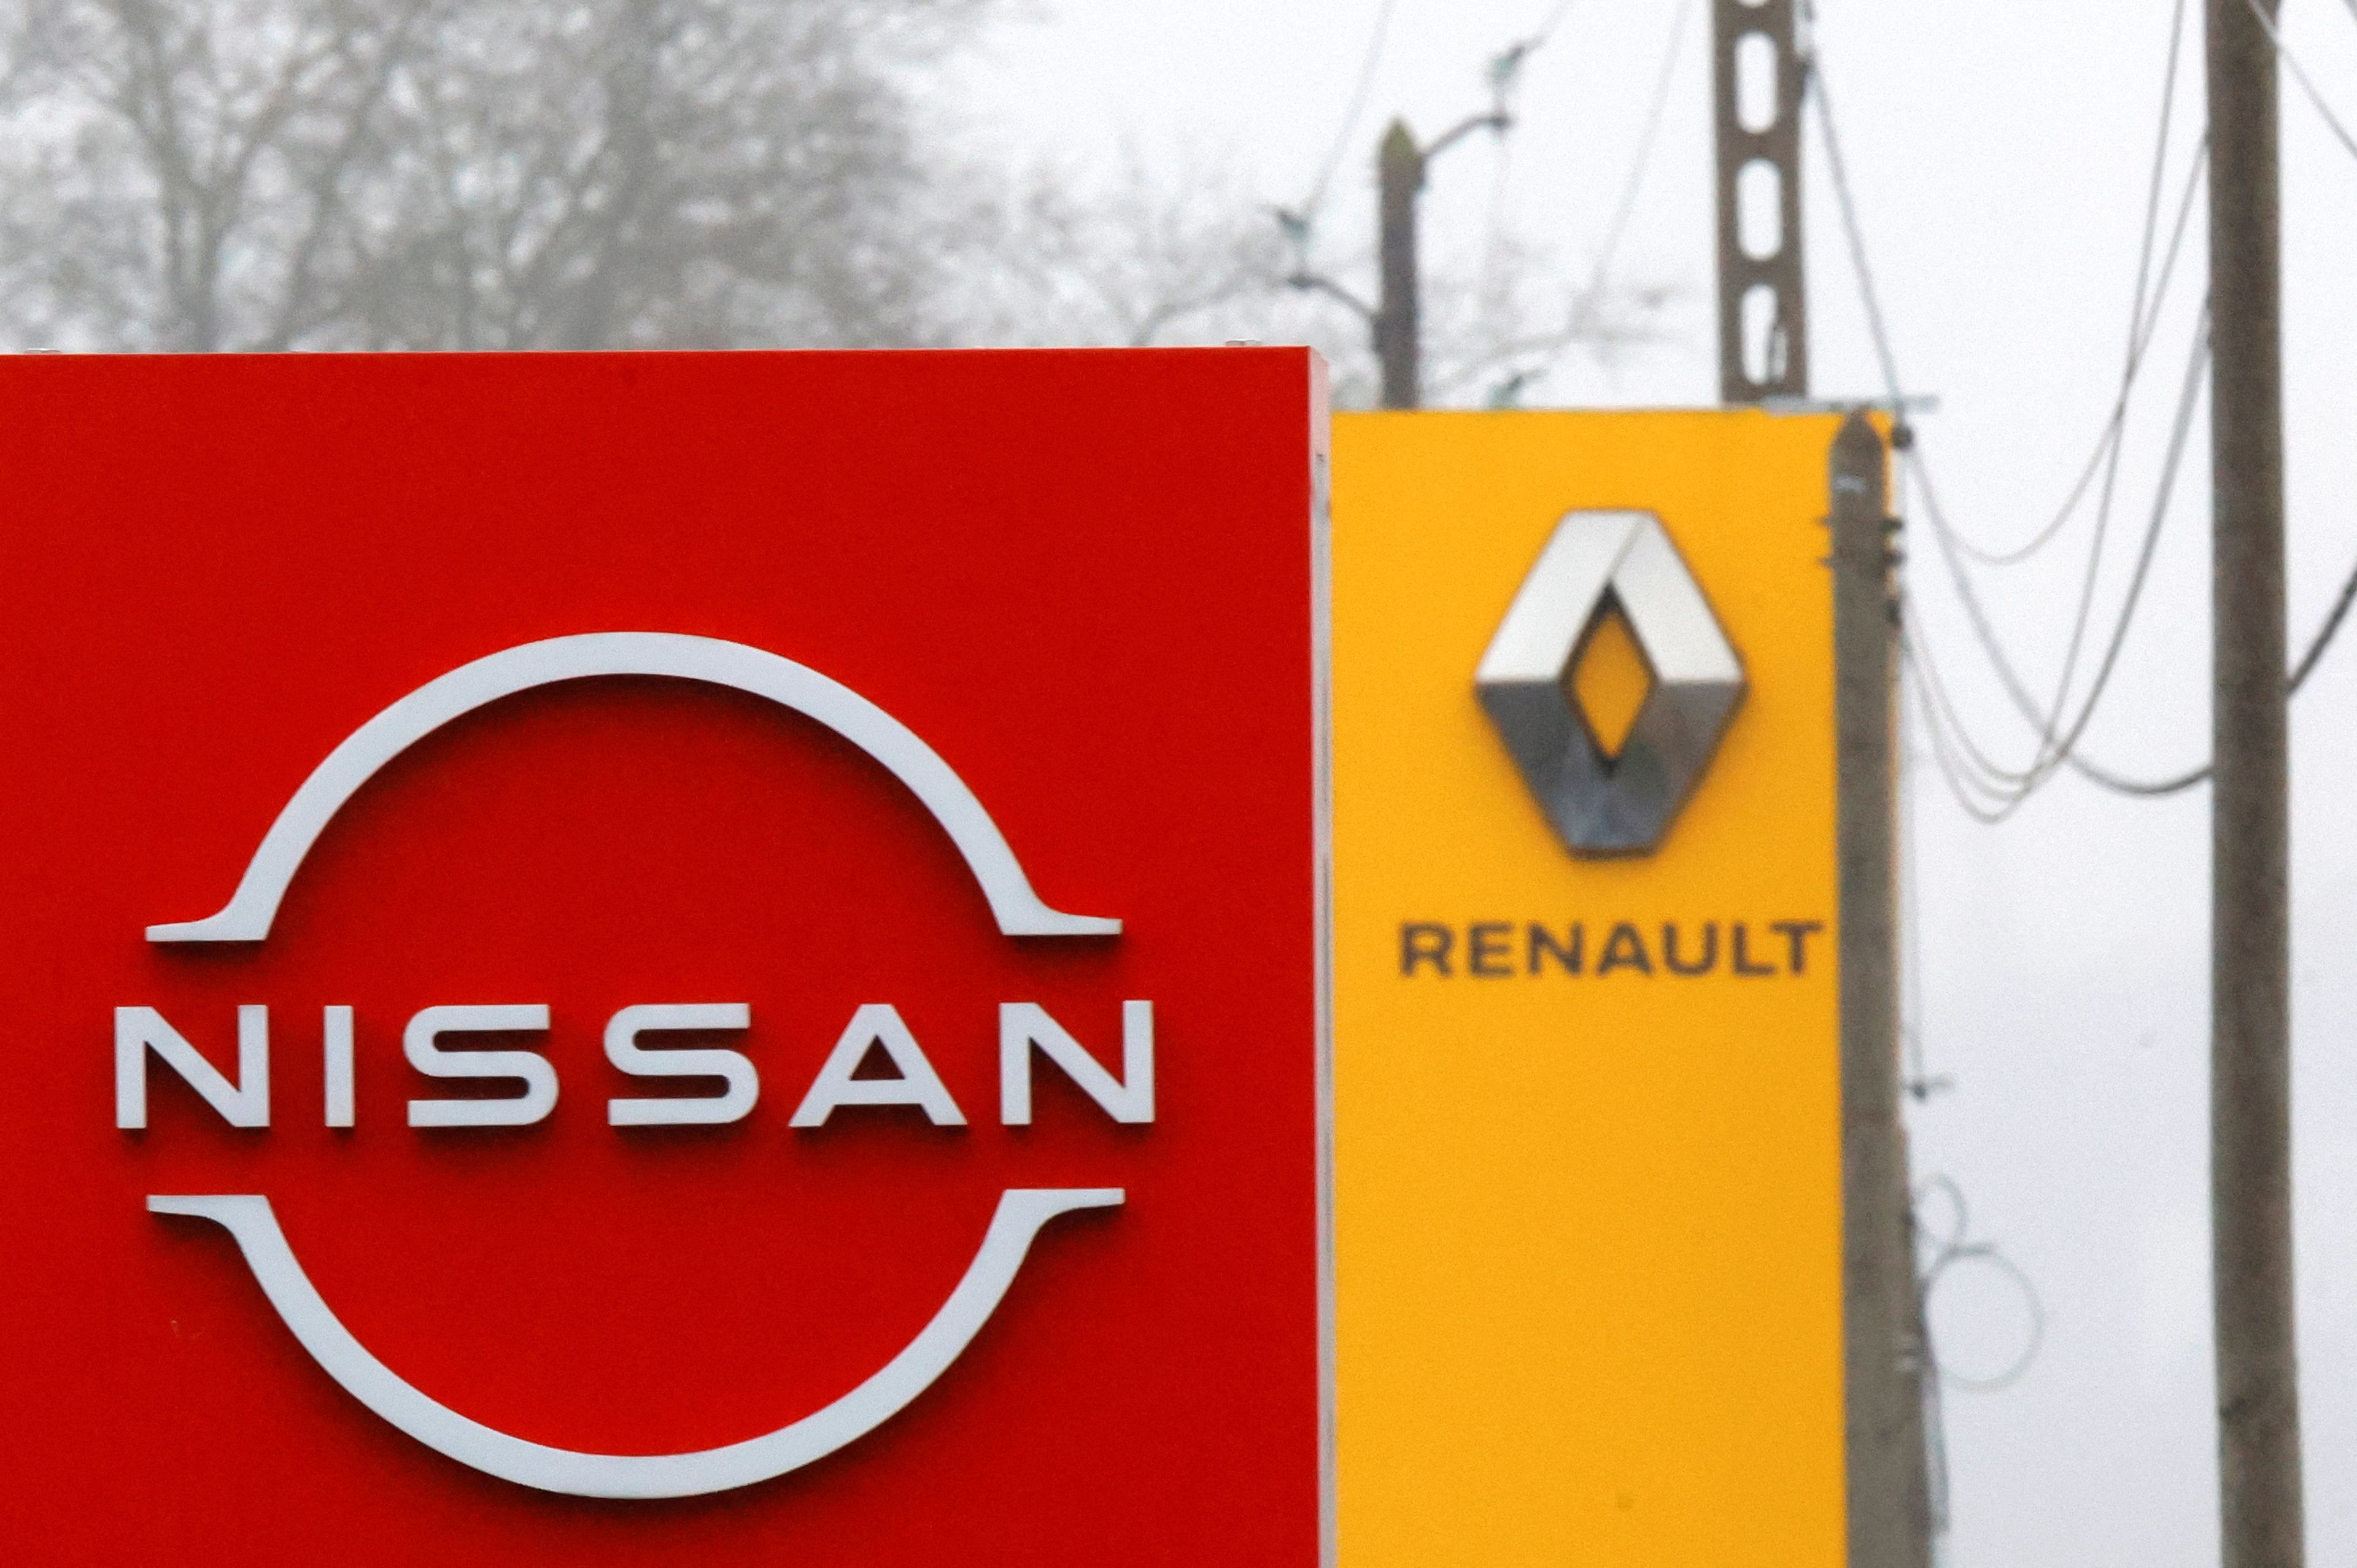 Los logos de Renault y Nissan.